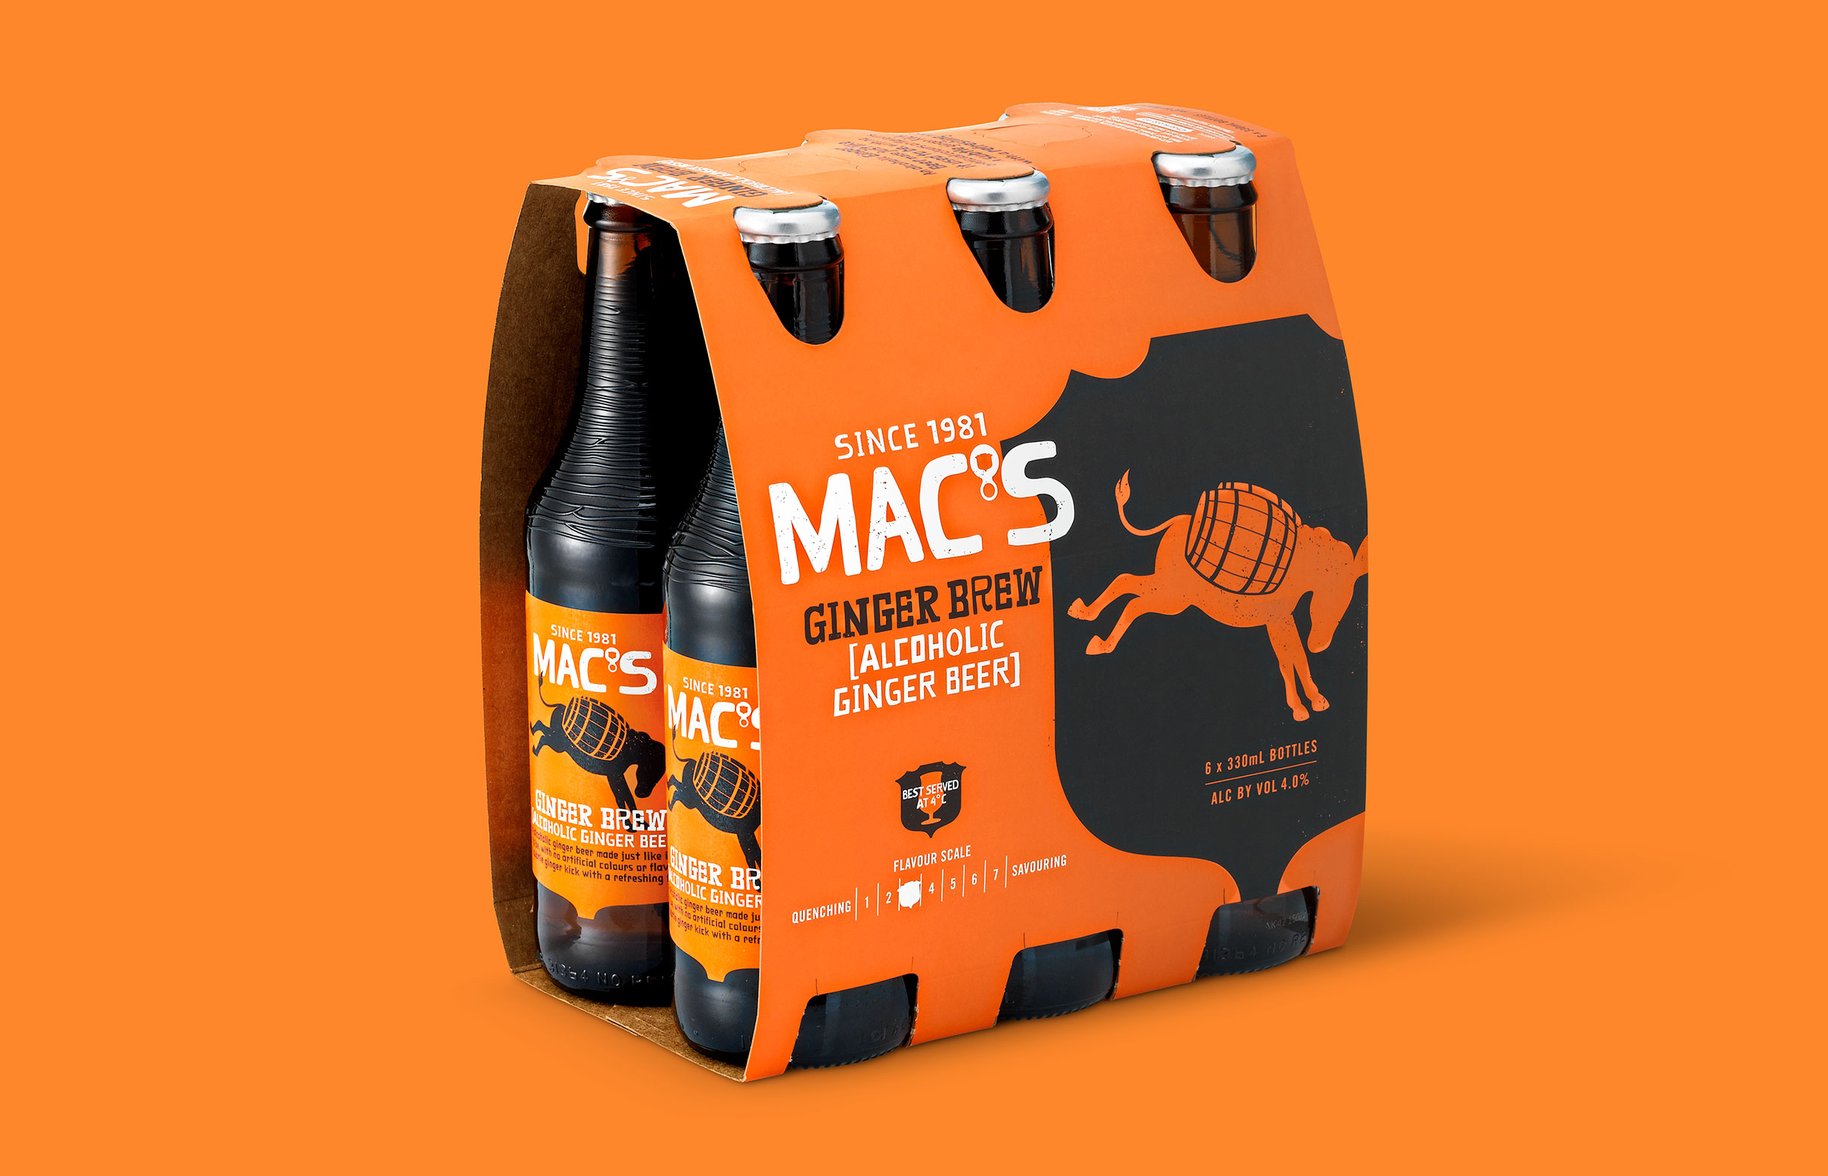 Macs Beer 6 pack ginger brew packaging